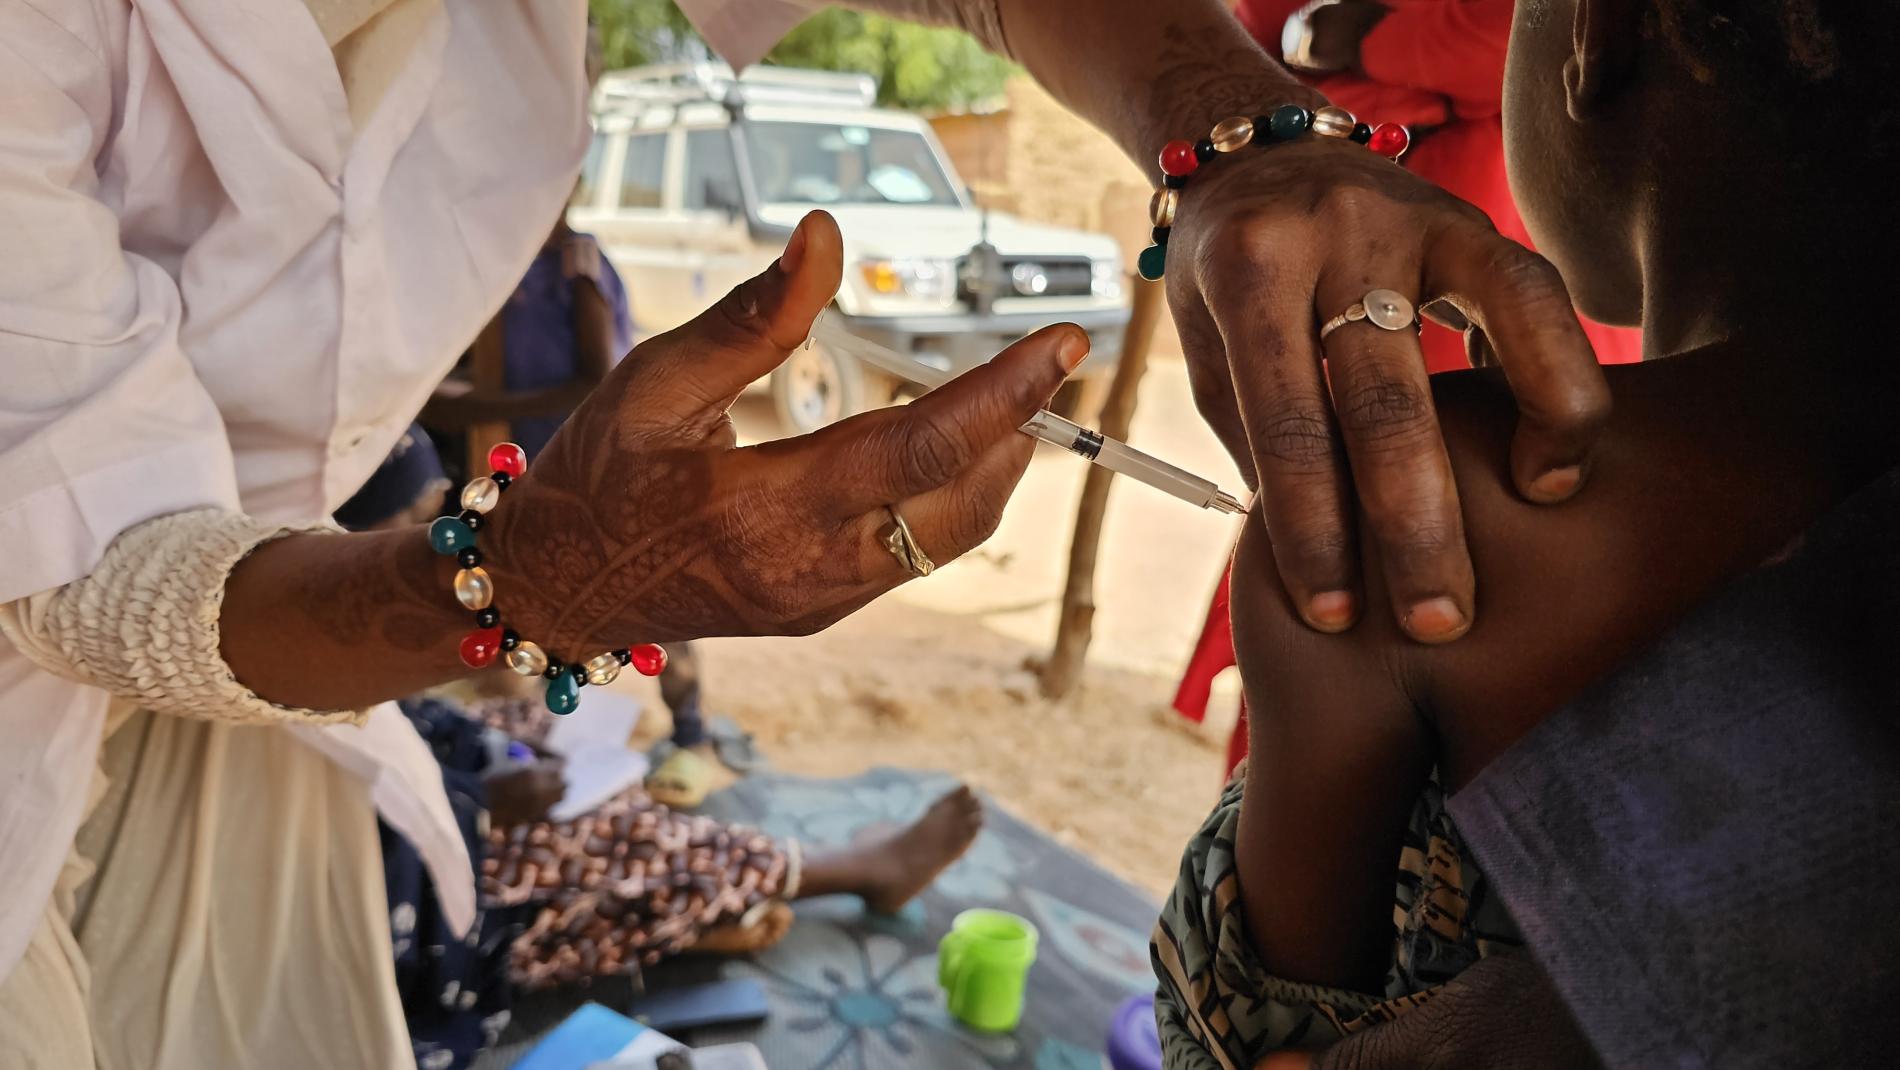 L’OMS appuie le Niger pour maîtriser l'épidémie de diphtérie